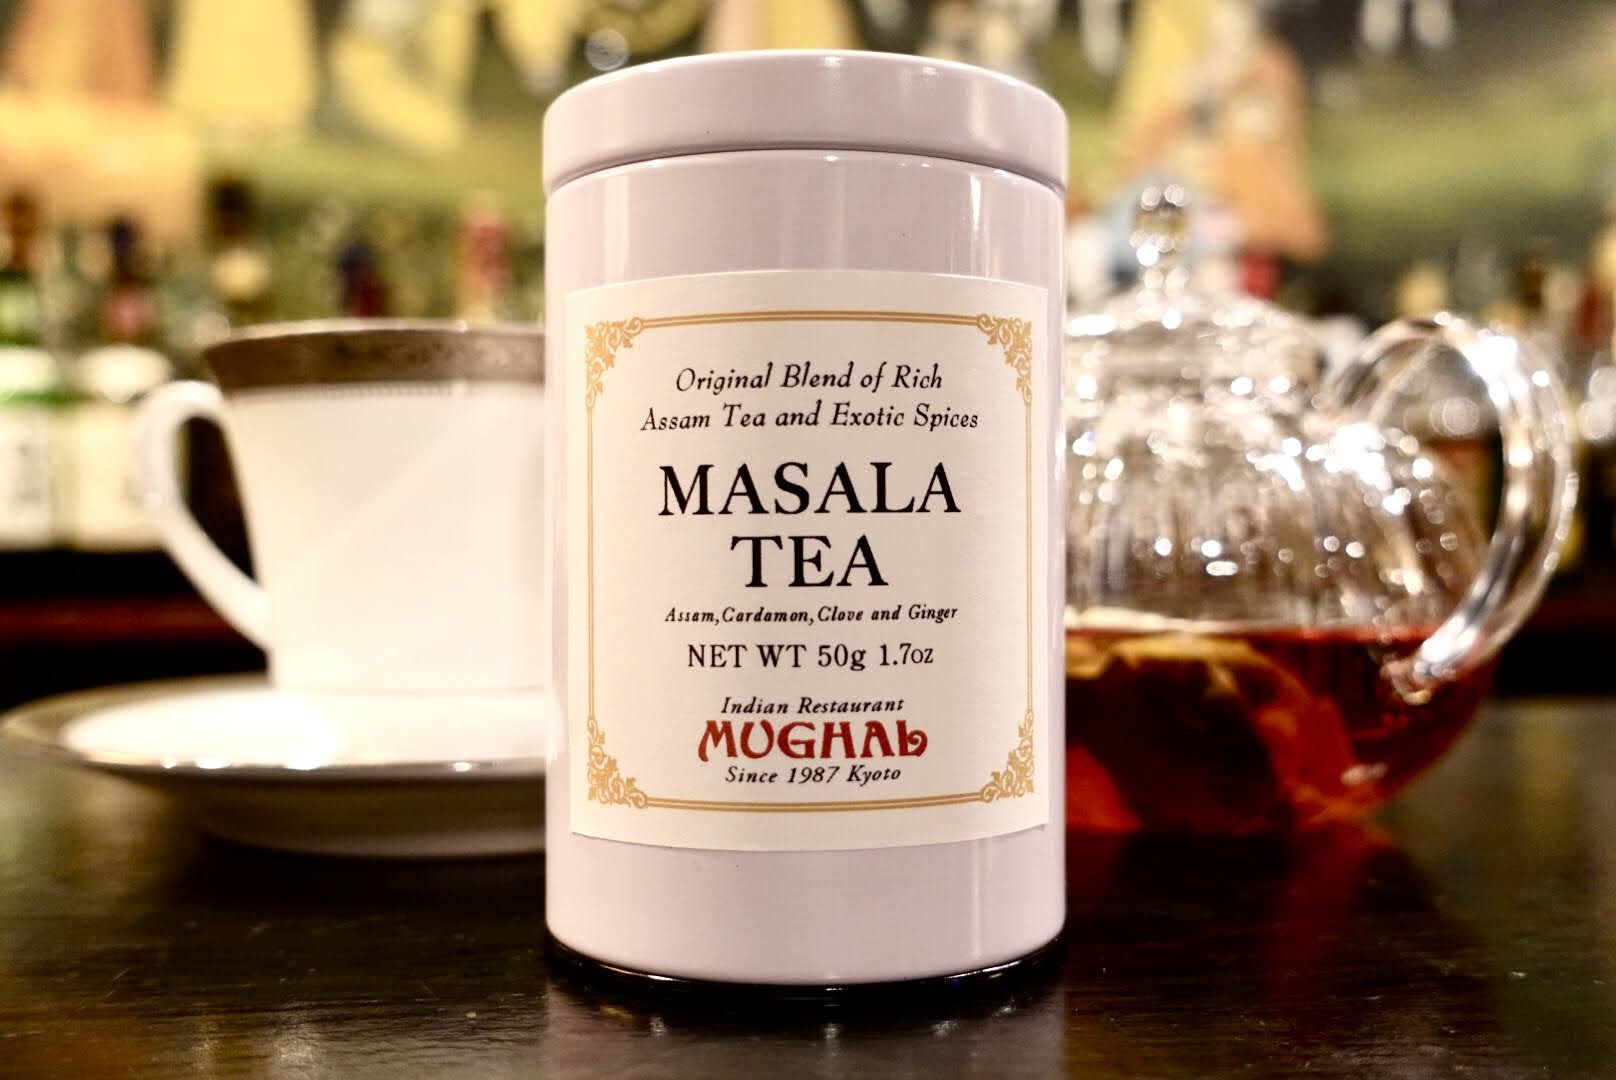 ムガール オリジナルブレンド マサラティー・白缶